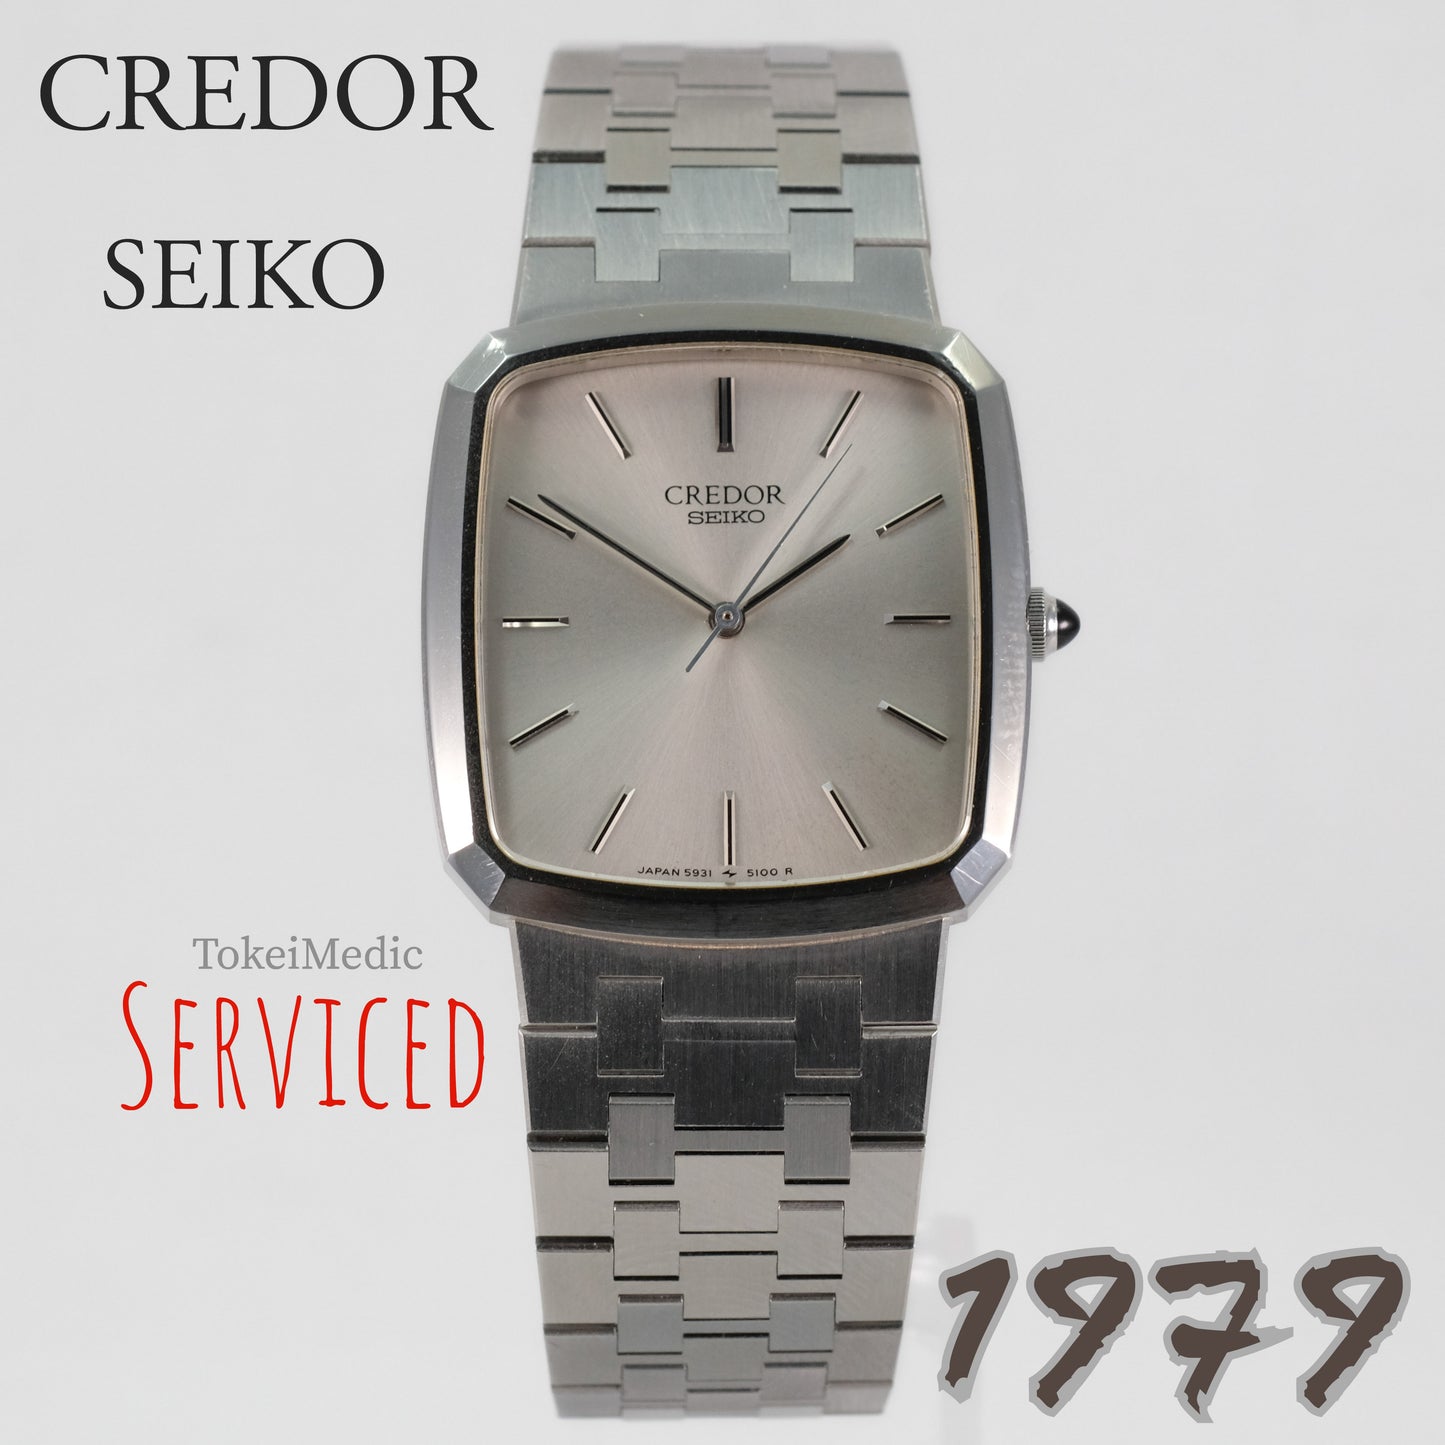 1979 Credor Seiko 5931-5120